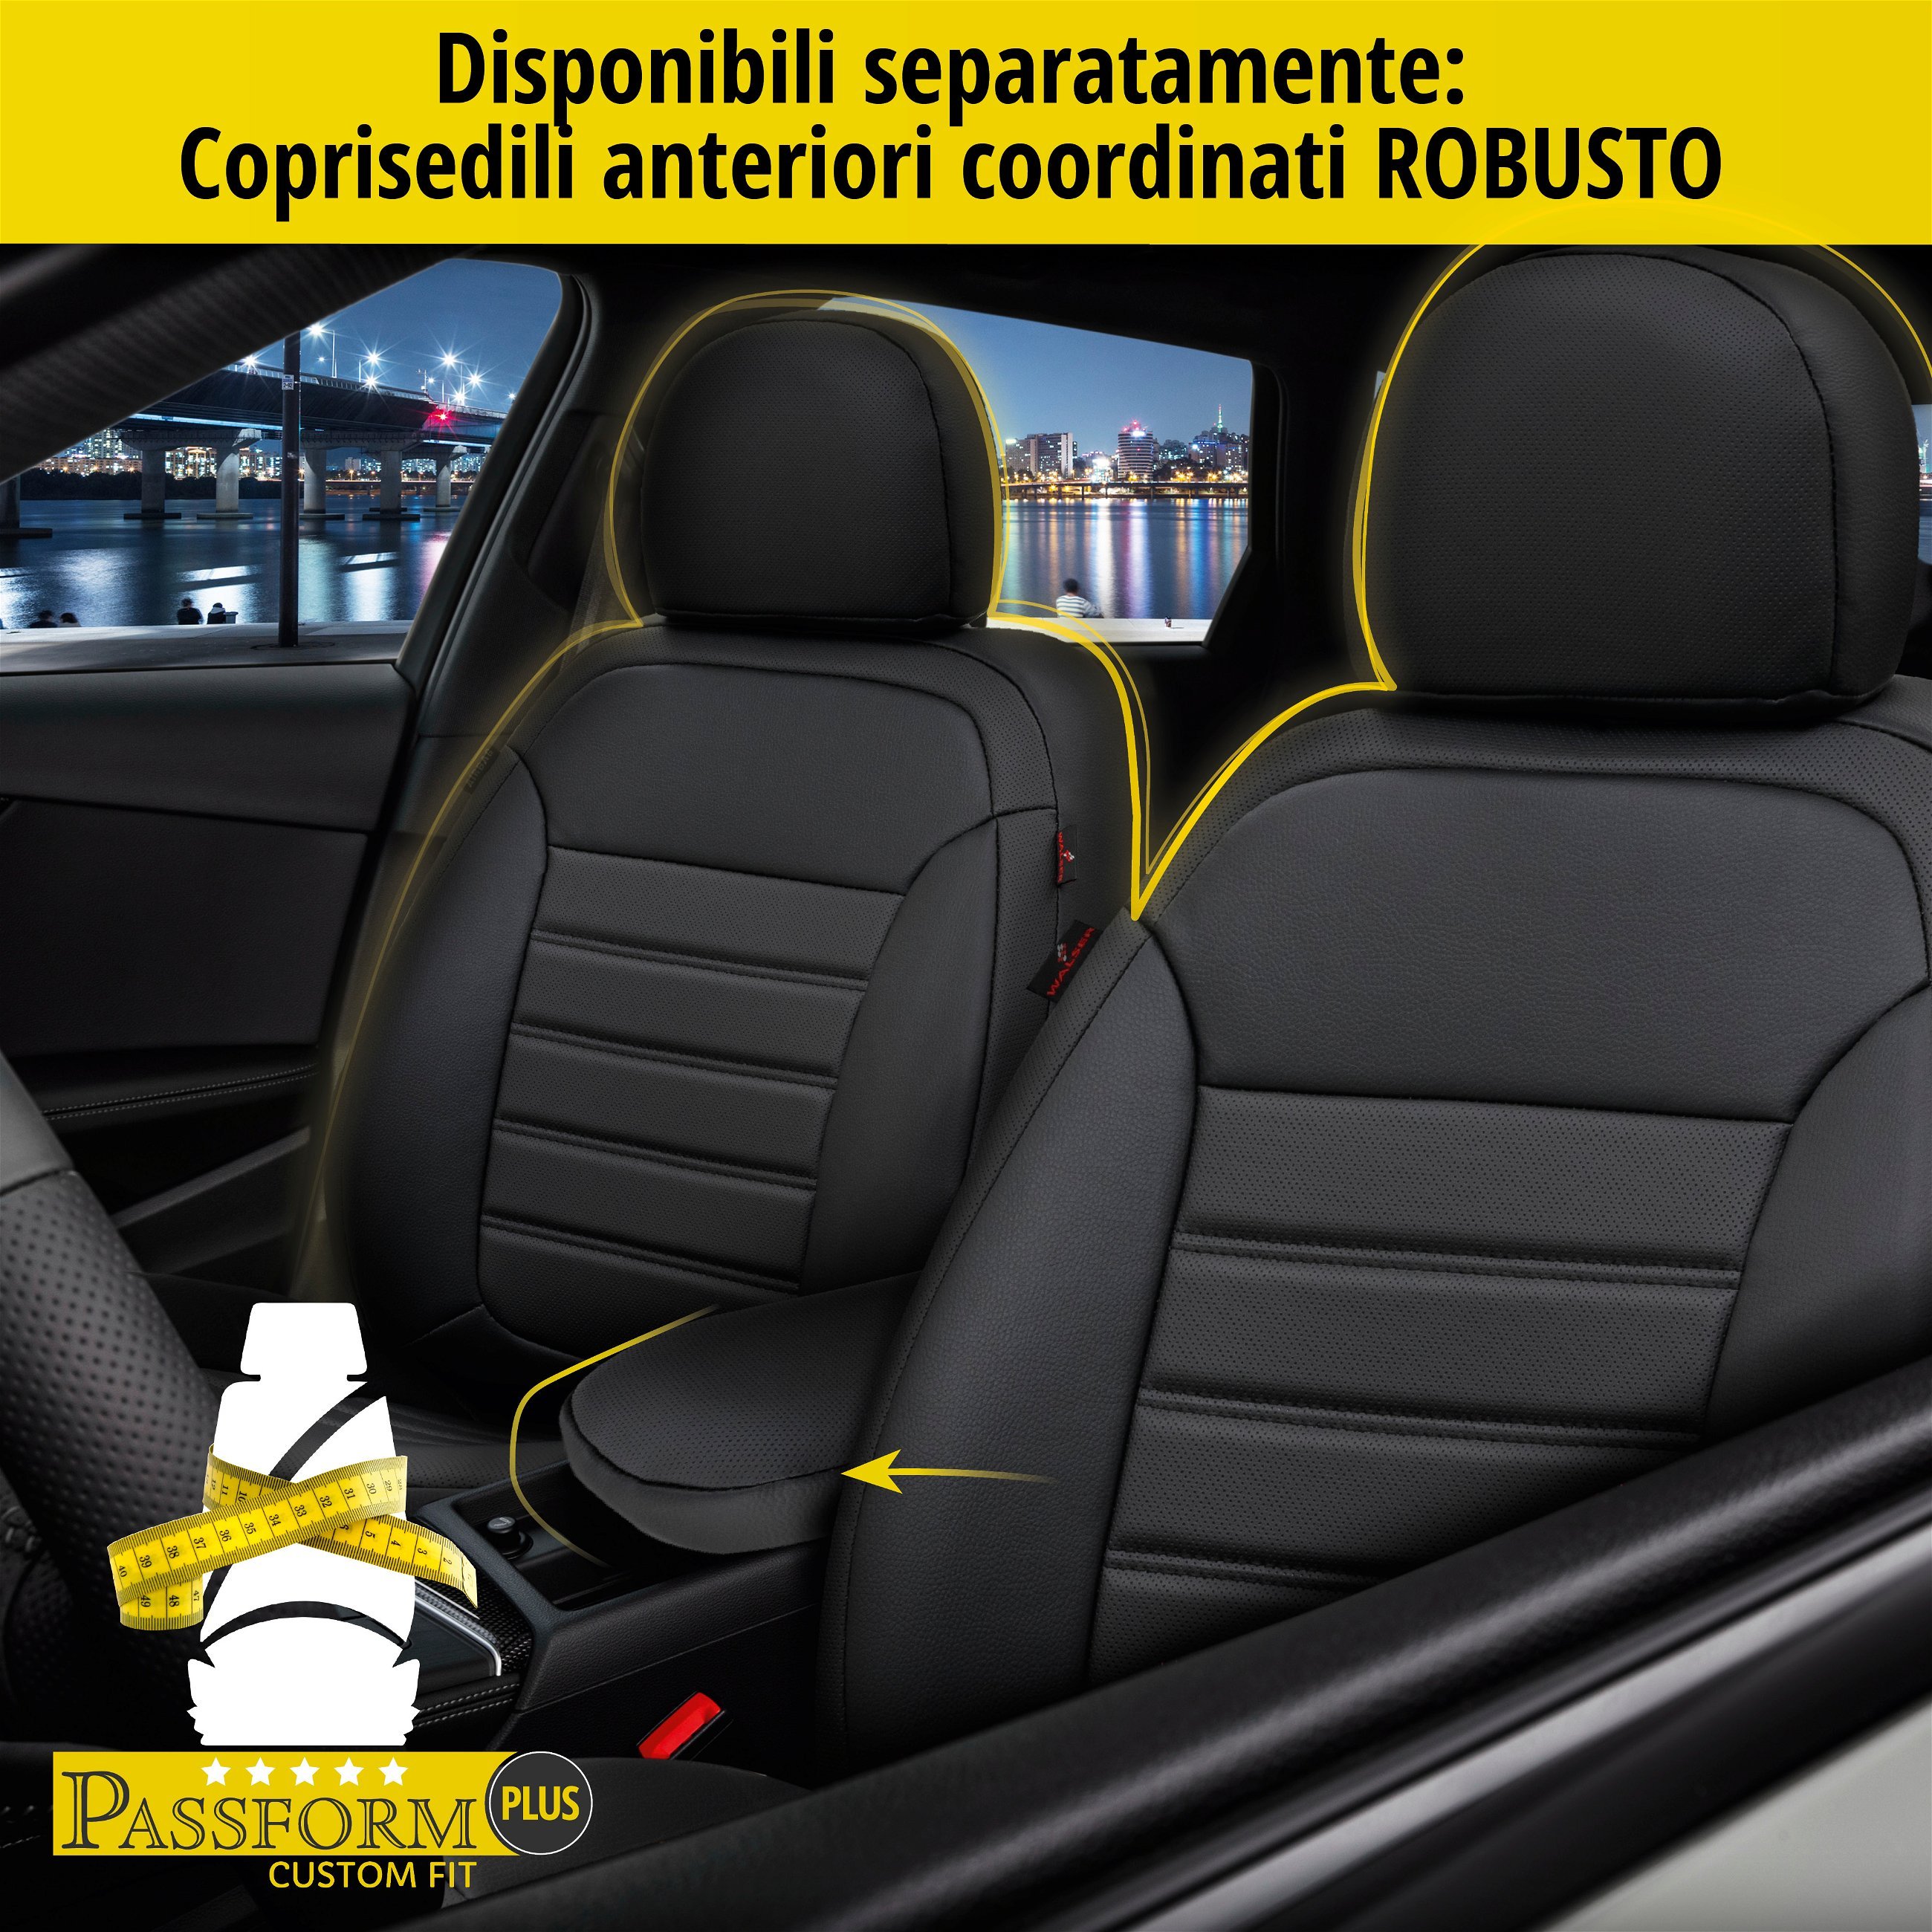 Coprisedili Robusto per BMW X1 (E84) 03/2009-06/2015, 1 coprisedili posteriore per sedili normali